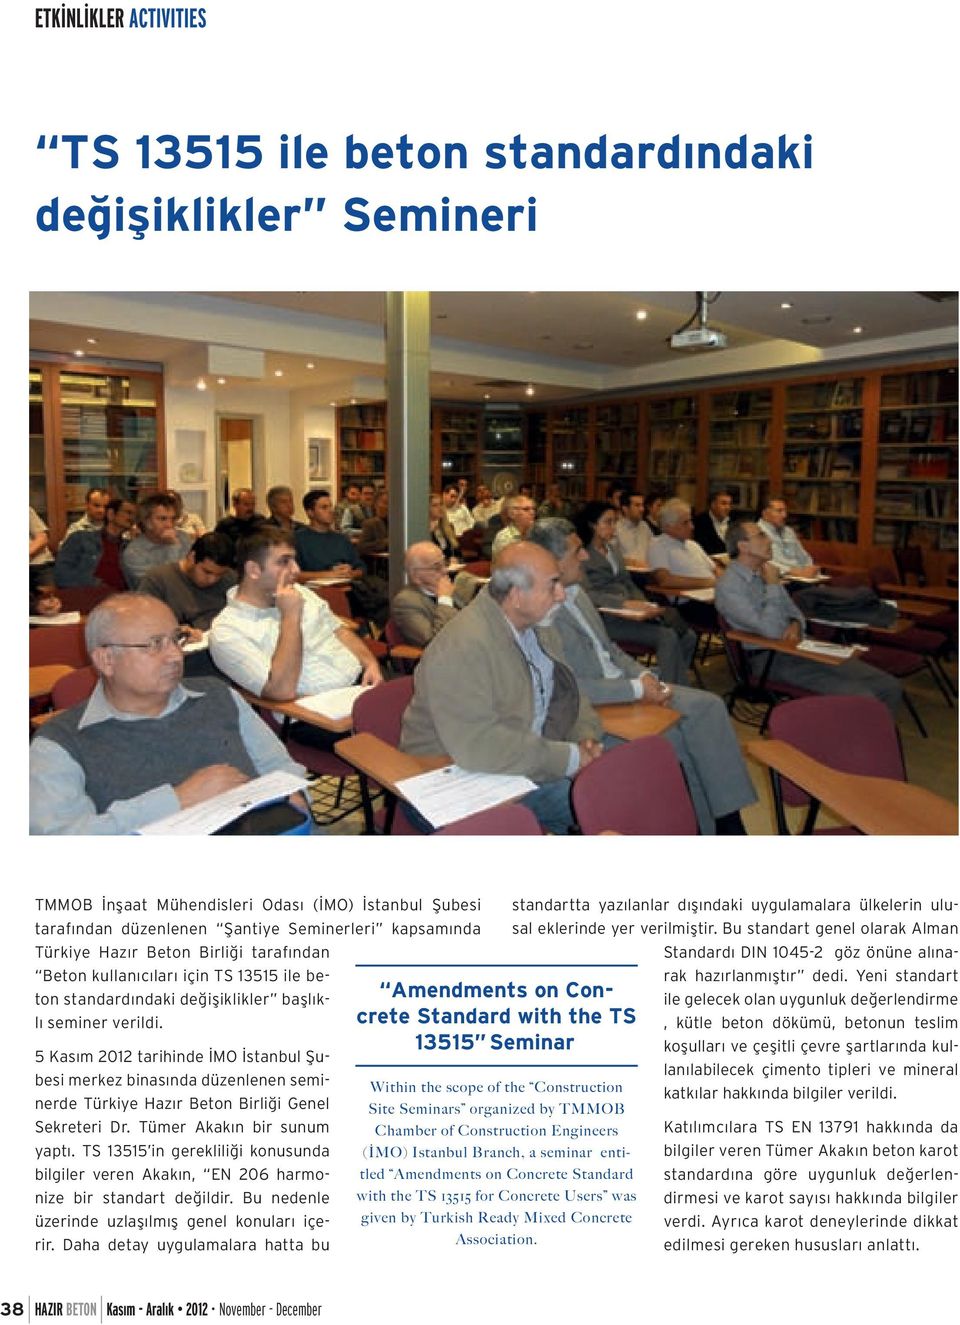 5 Kasım 2012 tarihinde İMO İstanbul Şubesi merkez binasında düzenlenen seminerde Türkiye Hazır Beton Birliği Genel Sekreteri Dr. Tümer Akakın bir sunum yaptı.